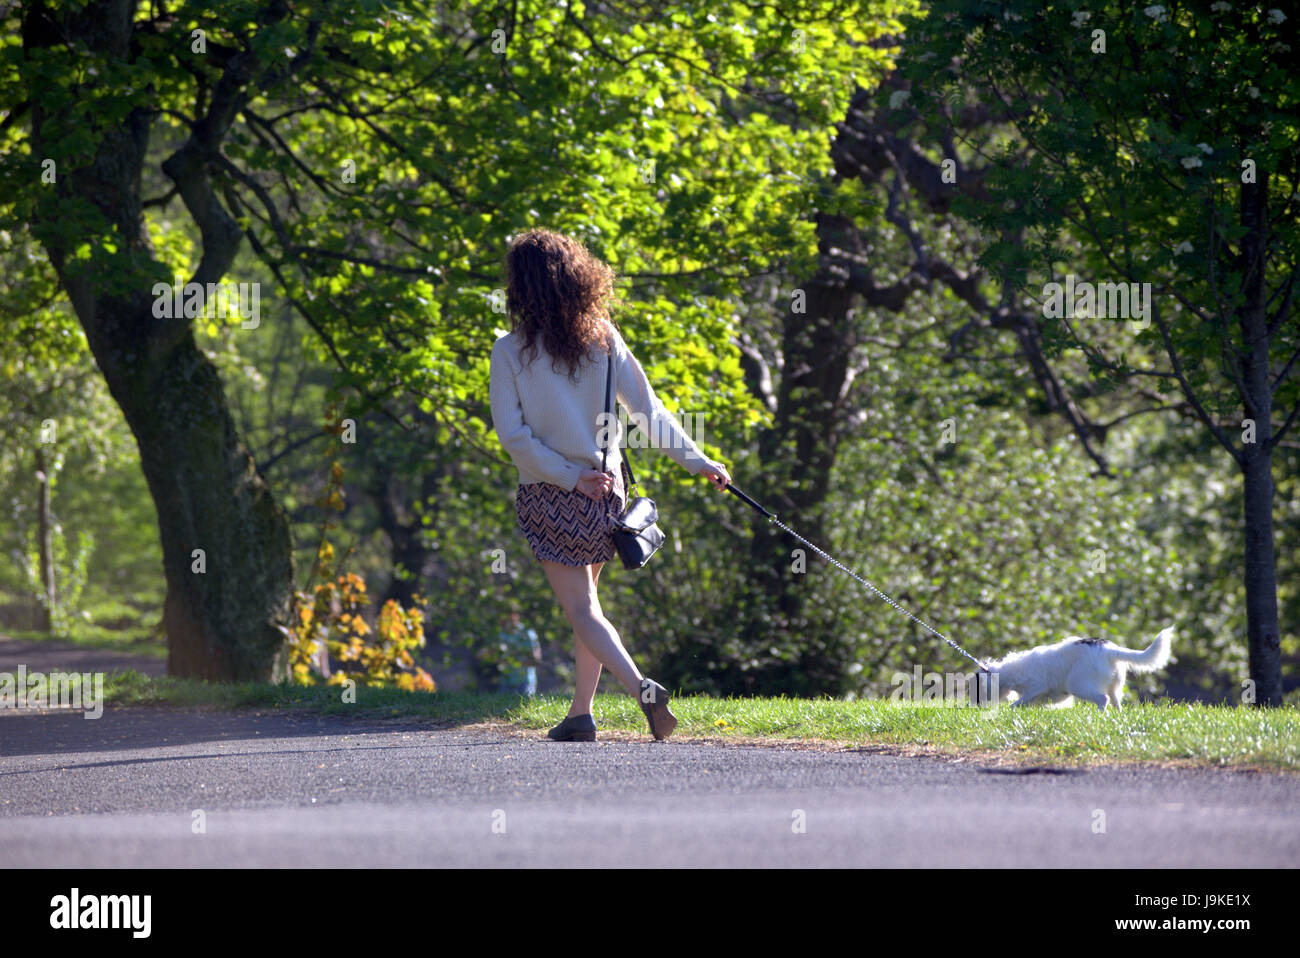 Glasgow Kelvingrove Park scena cane scuotipaglia Foto Stock